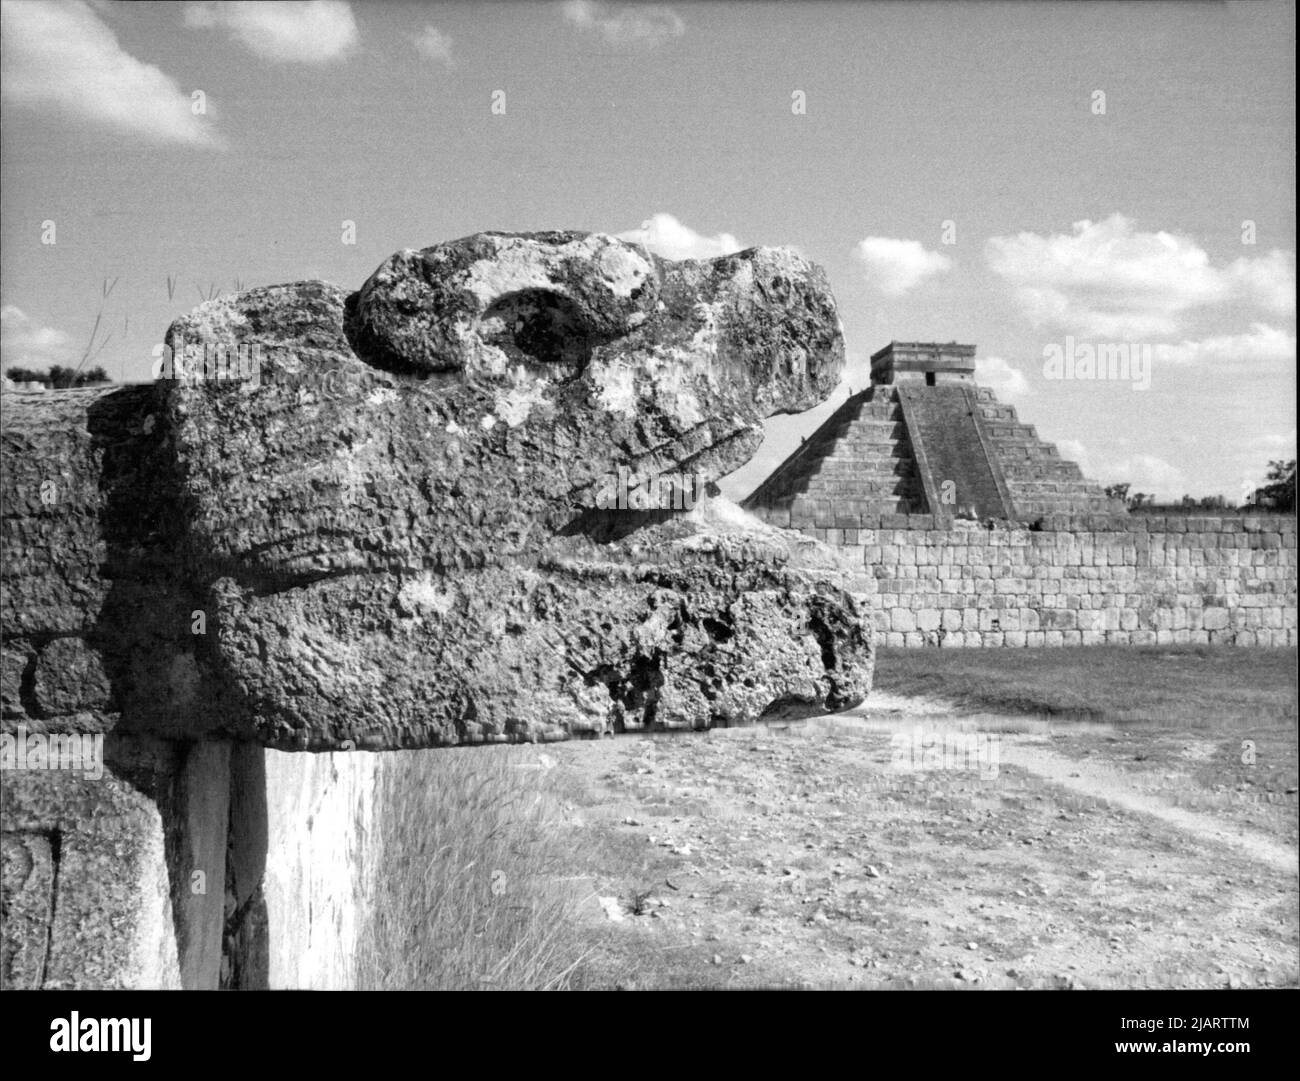 Ausgegrabene Kulturstätte der alten MAYAS in Chichen Itza Die Ruinen stammen aus der späten Maya-Zeit. Mit einer Fläche von 1547 Hektar ist Chichen Itza einer der ausgedehntesten Kundorte in Yucatan. Foto Stock